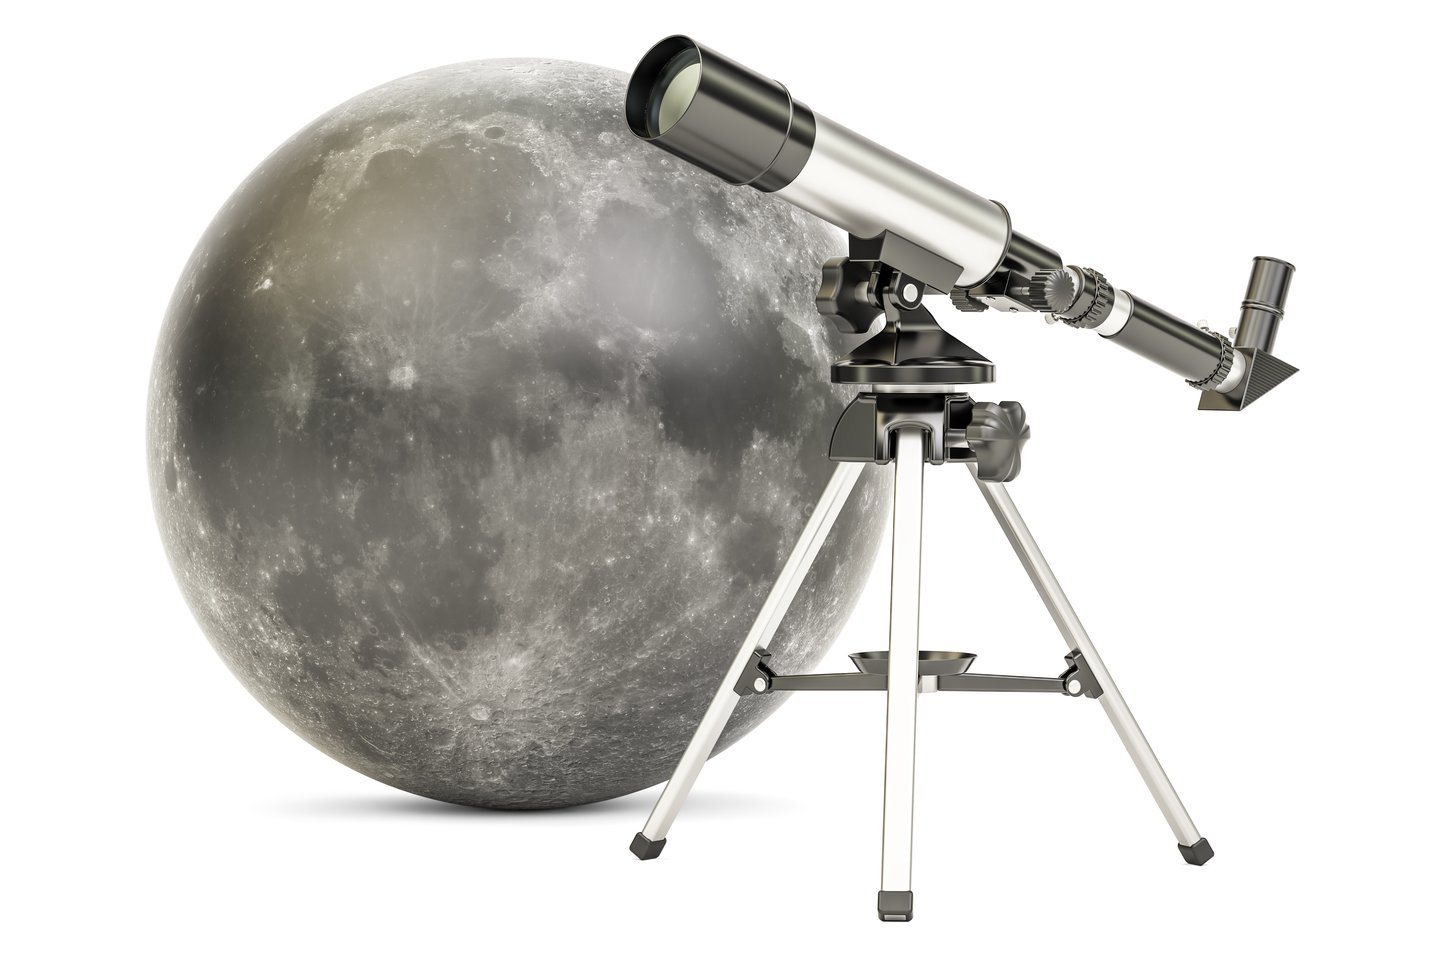  Po darbo sutemus Lukas atsigauna stebėdamas žvaigždes ir planetas per teleskopą.  Mėnulis per teleskopą atrodo lyg vaizdas iš atviruko, galima jį priartinti iki kraterių ir lygumų.